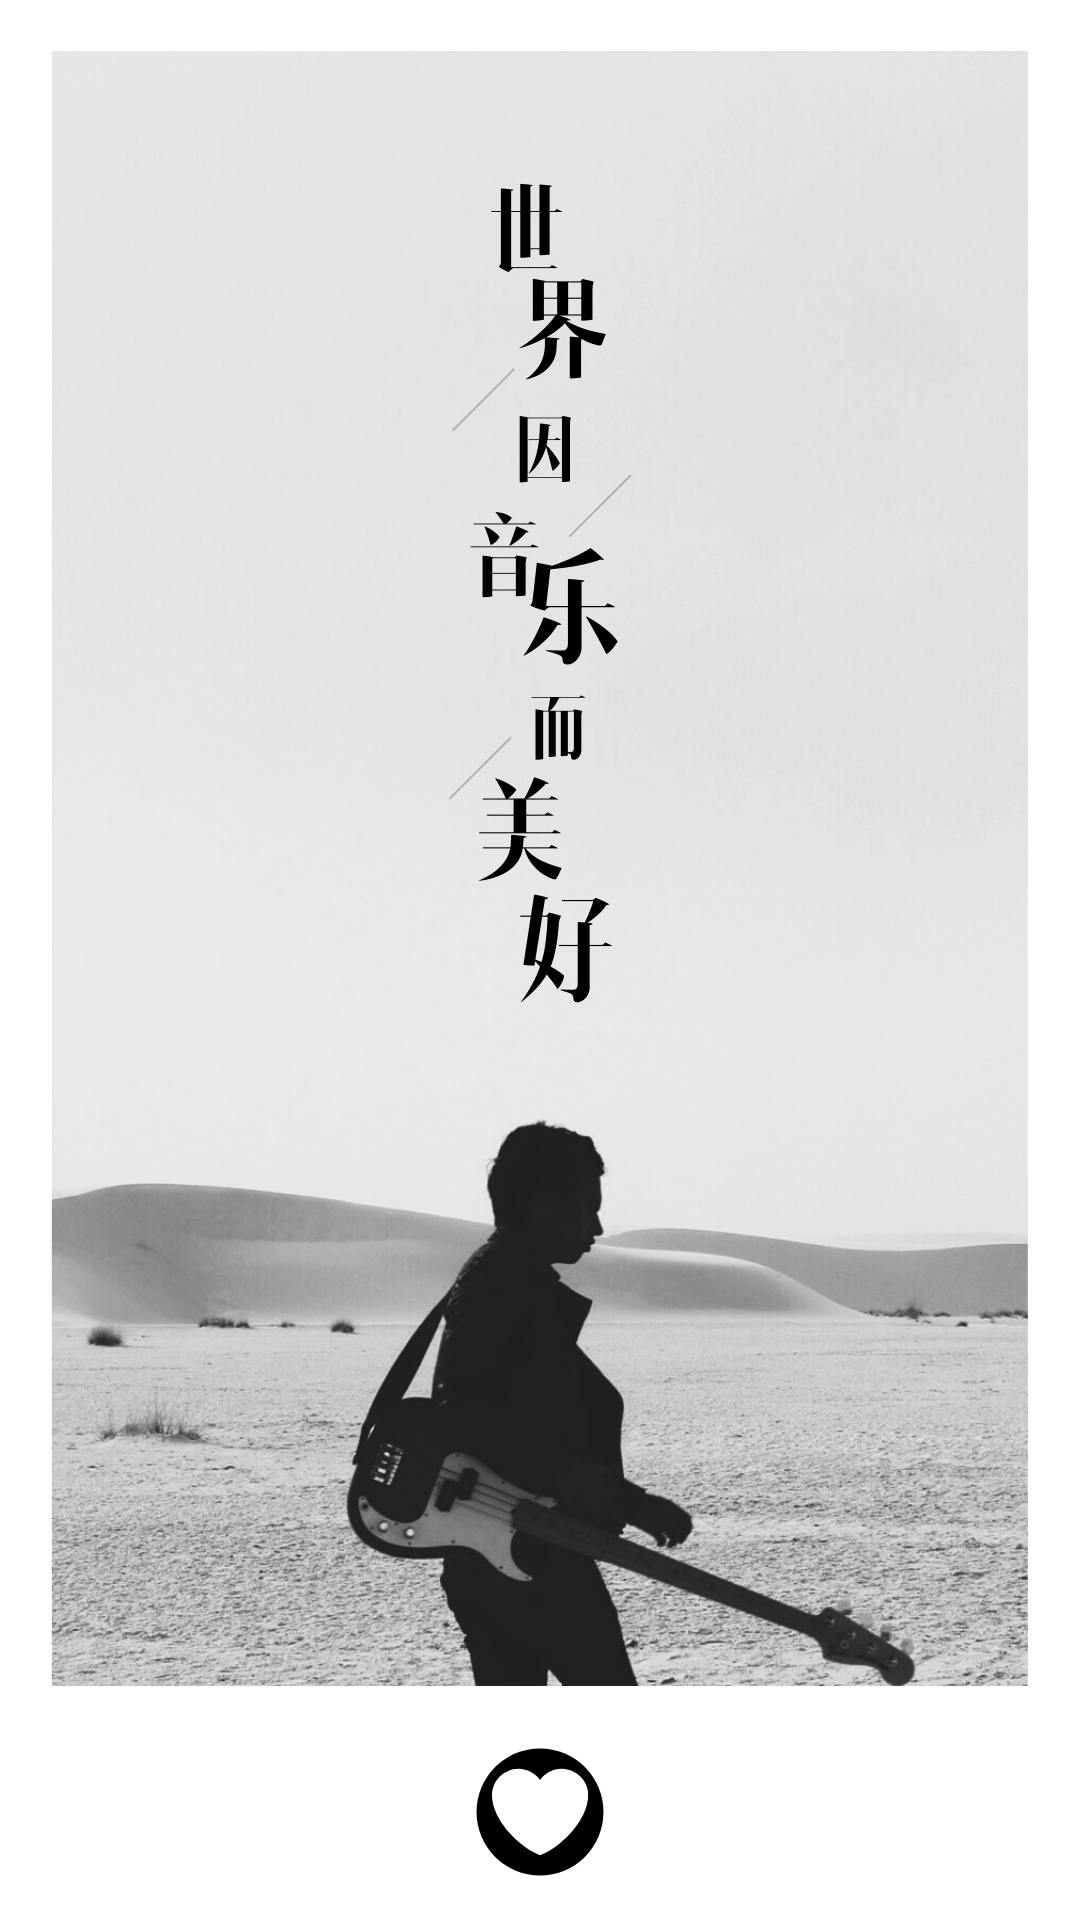 黑白色沙漠乐手人物音乐中文视频相框.png